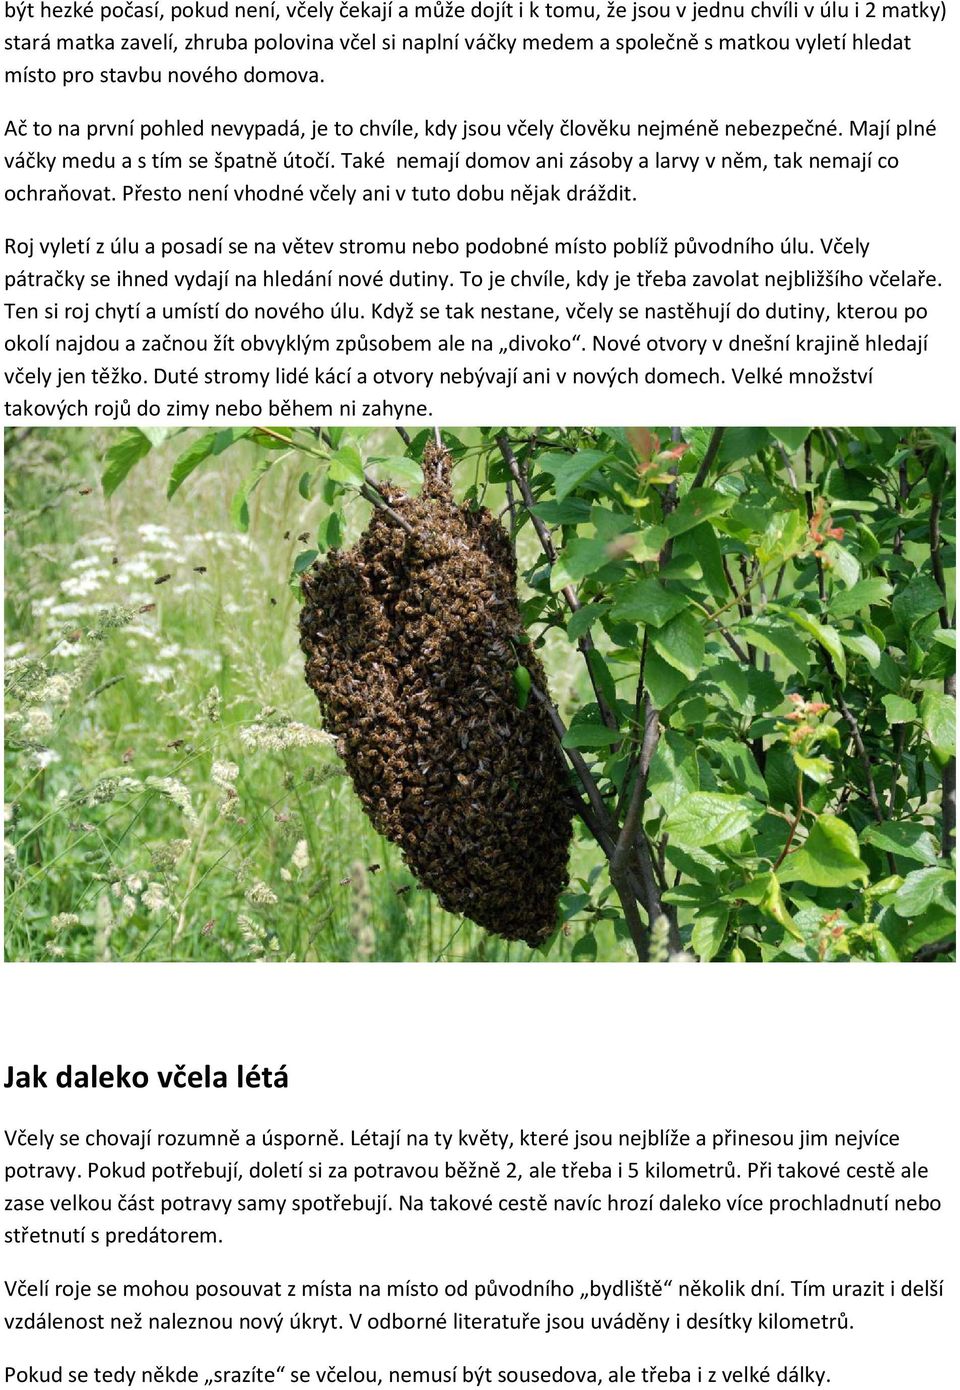 Také nemají domov ani zásoby a larvy v něm, tak nemají co ochraňovat. Přesto není vhodné včely ani v tuto dobu nějak dráždit.